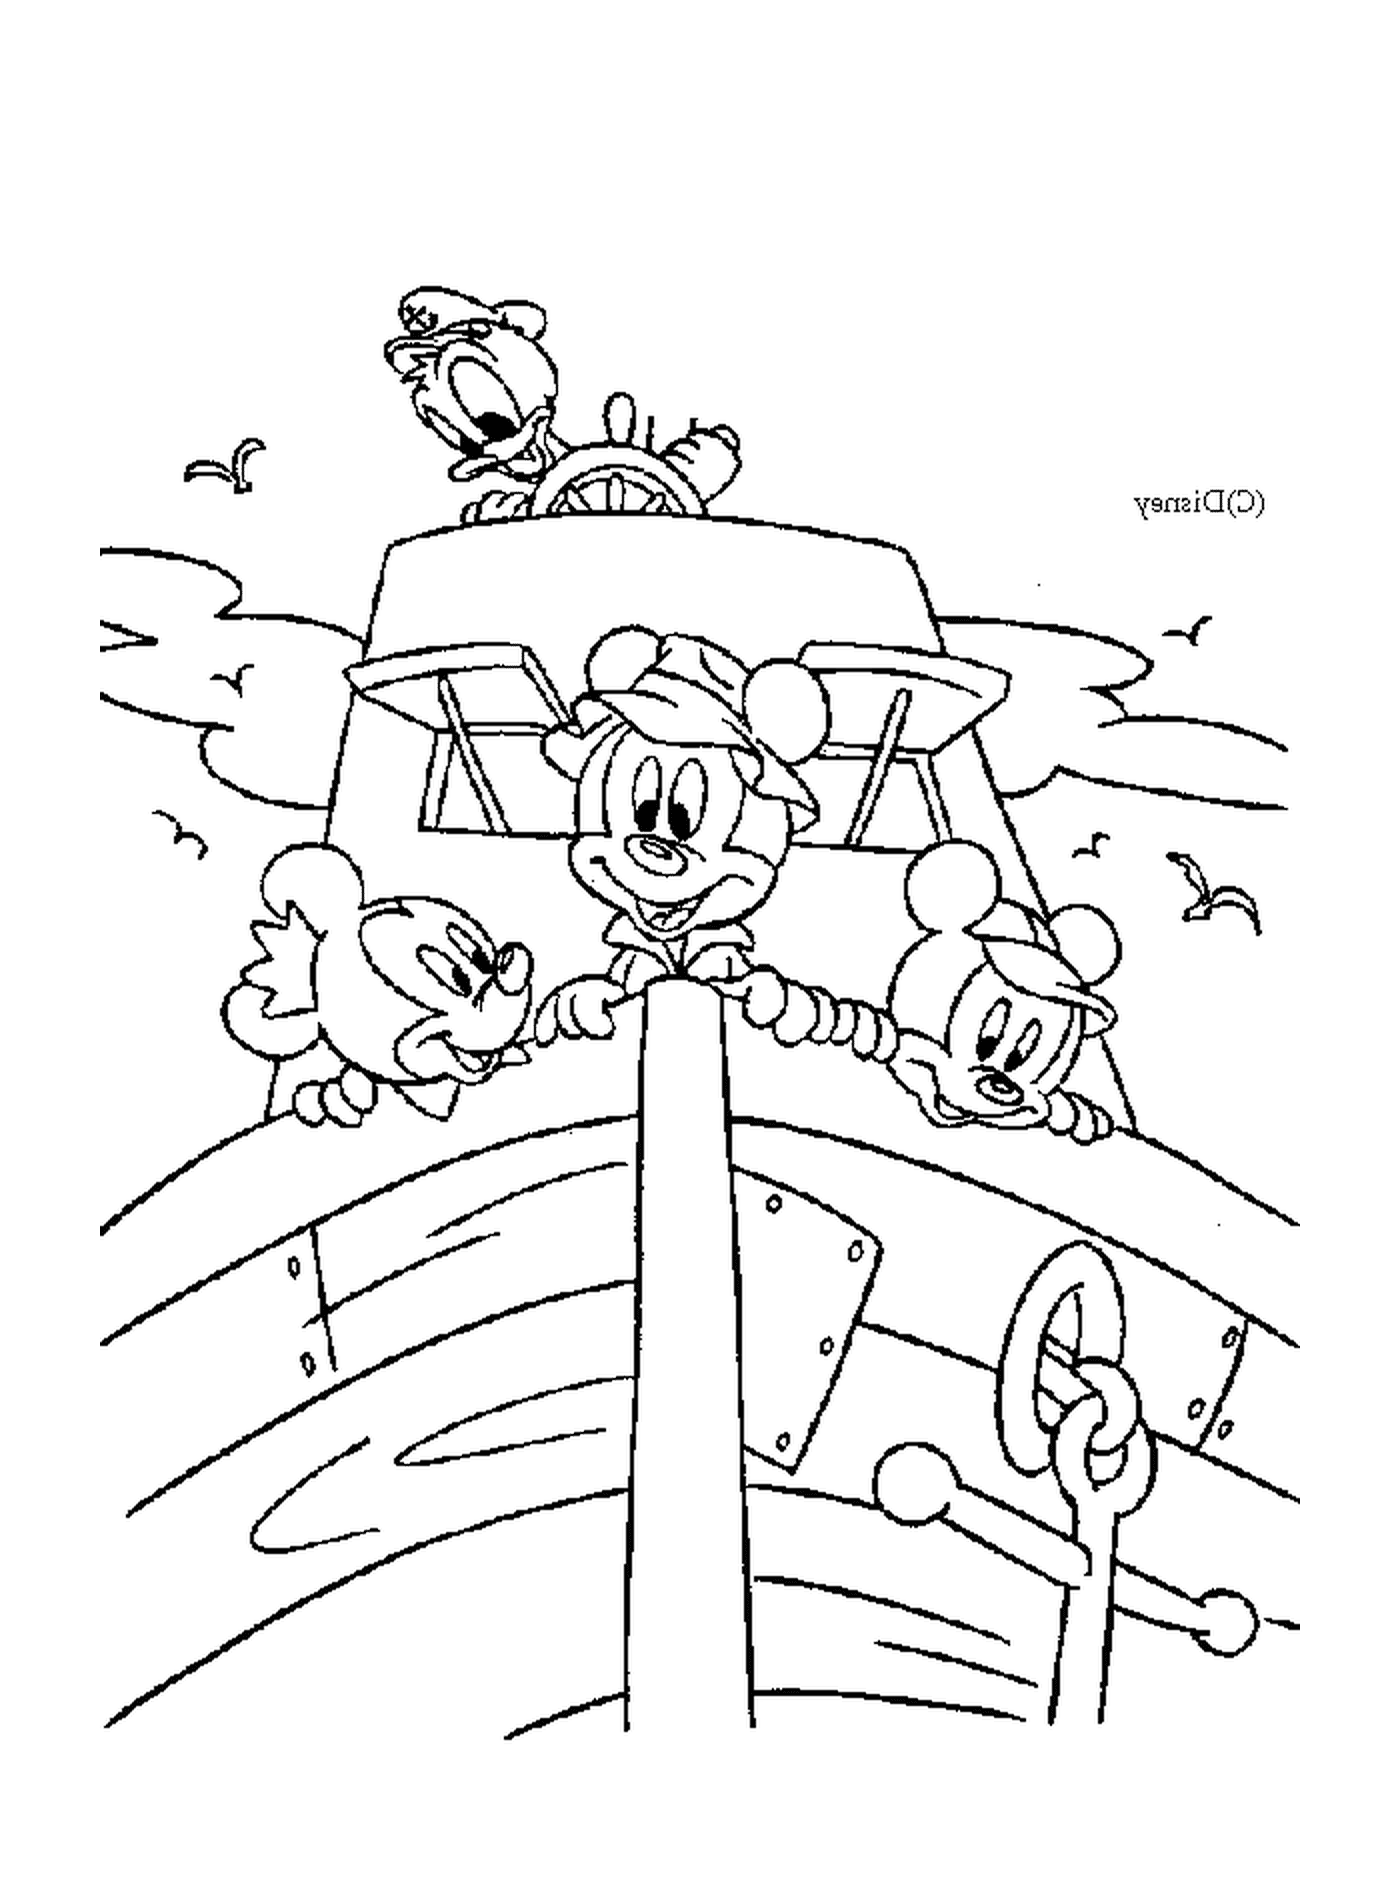  ميكي وصديقه دونالد على قارب : ميكي وأصدقاؤه 